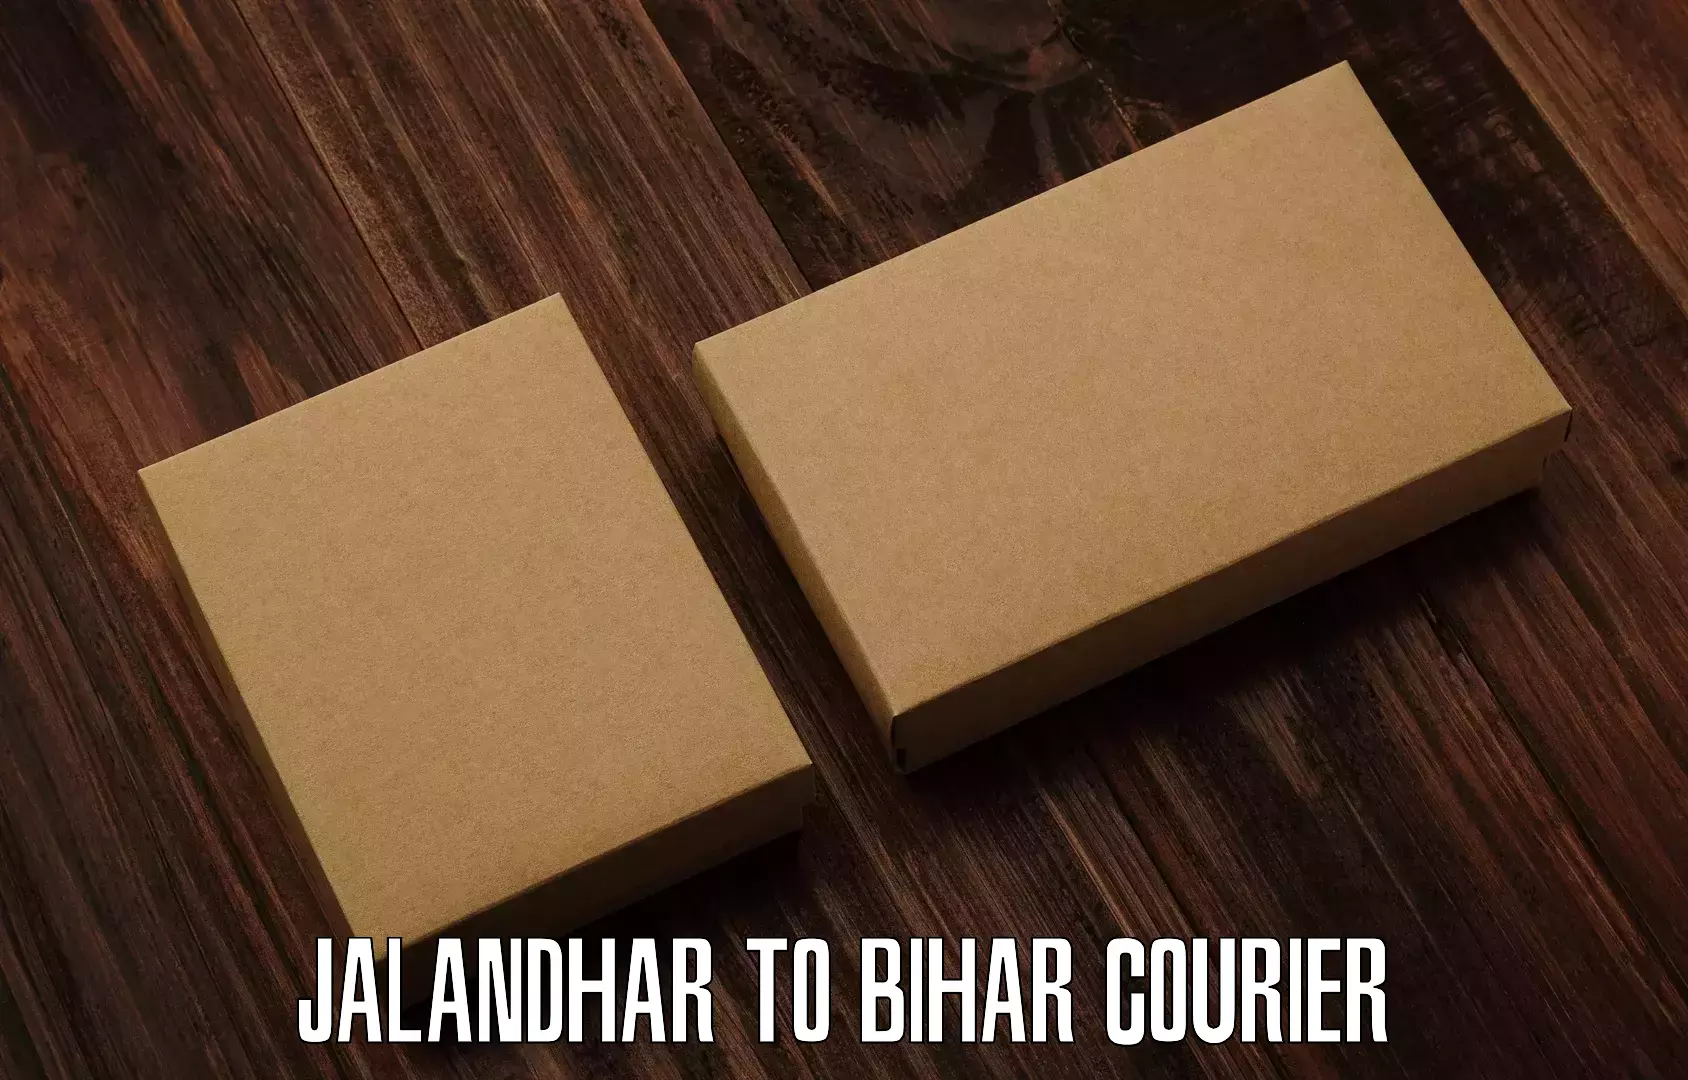 Efficient parcel tracking Jalandhar to Bihar